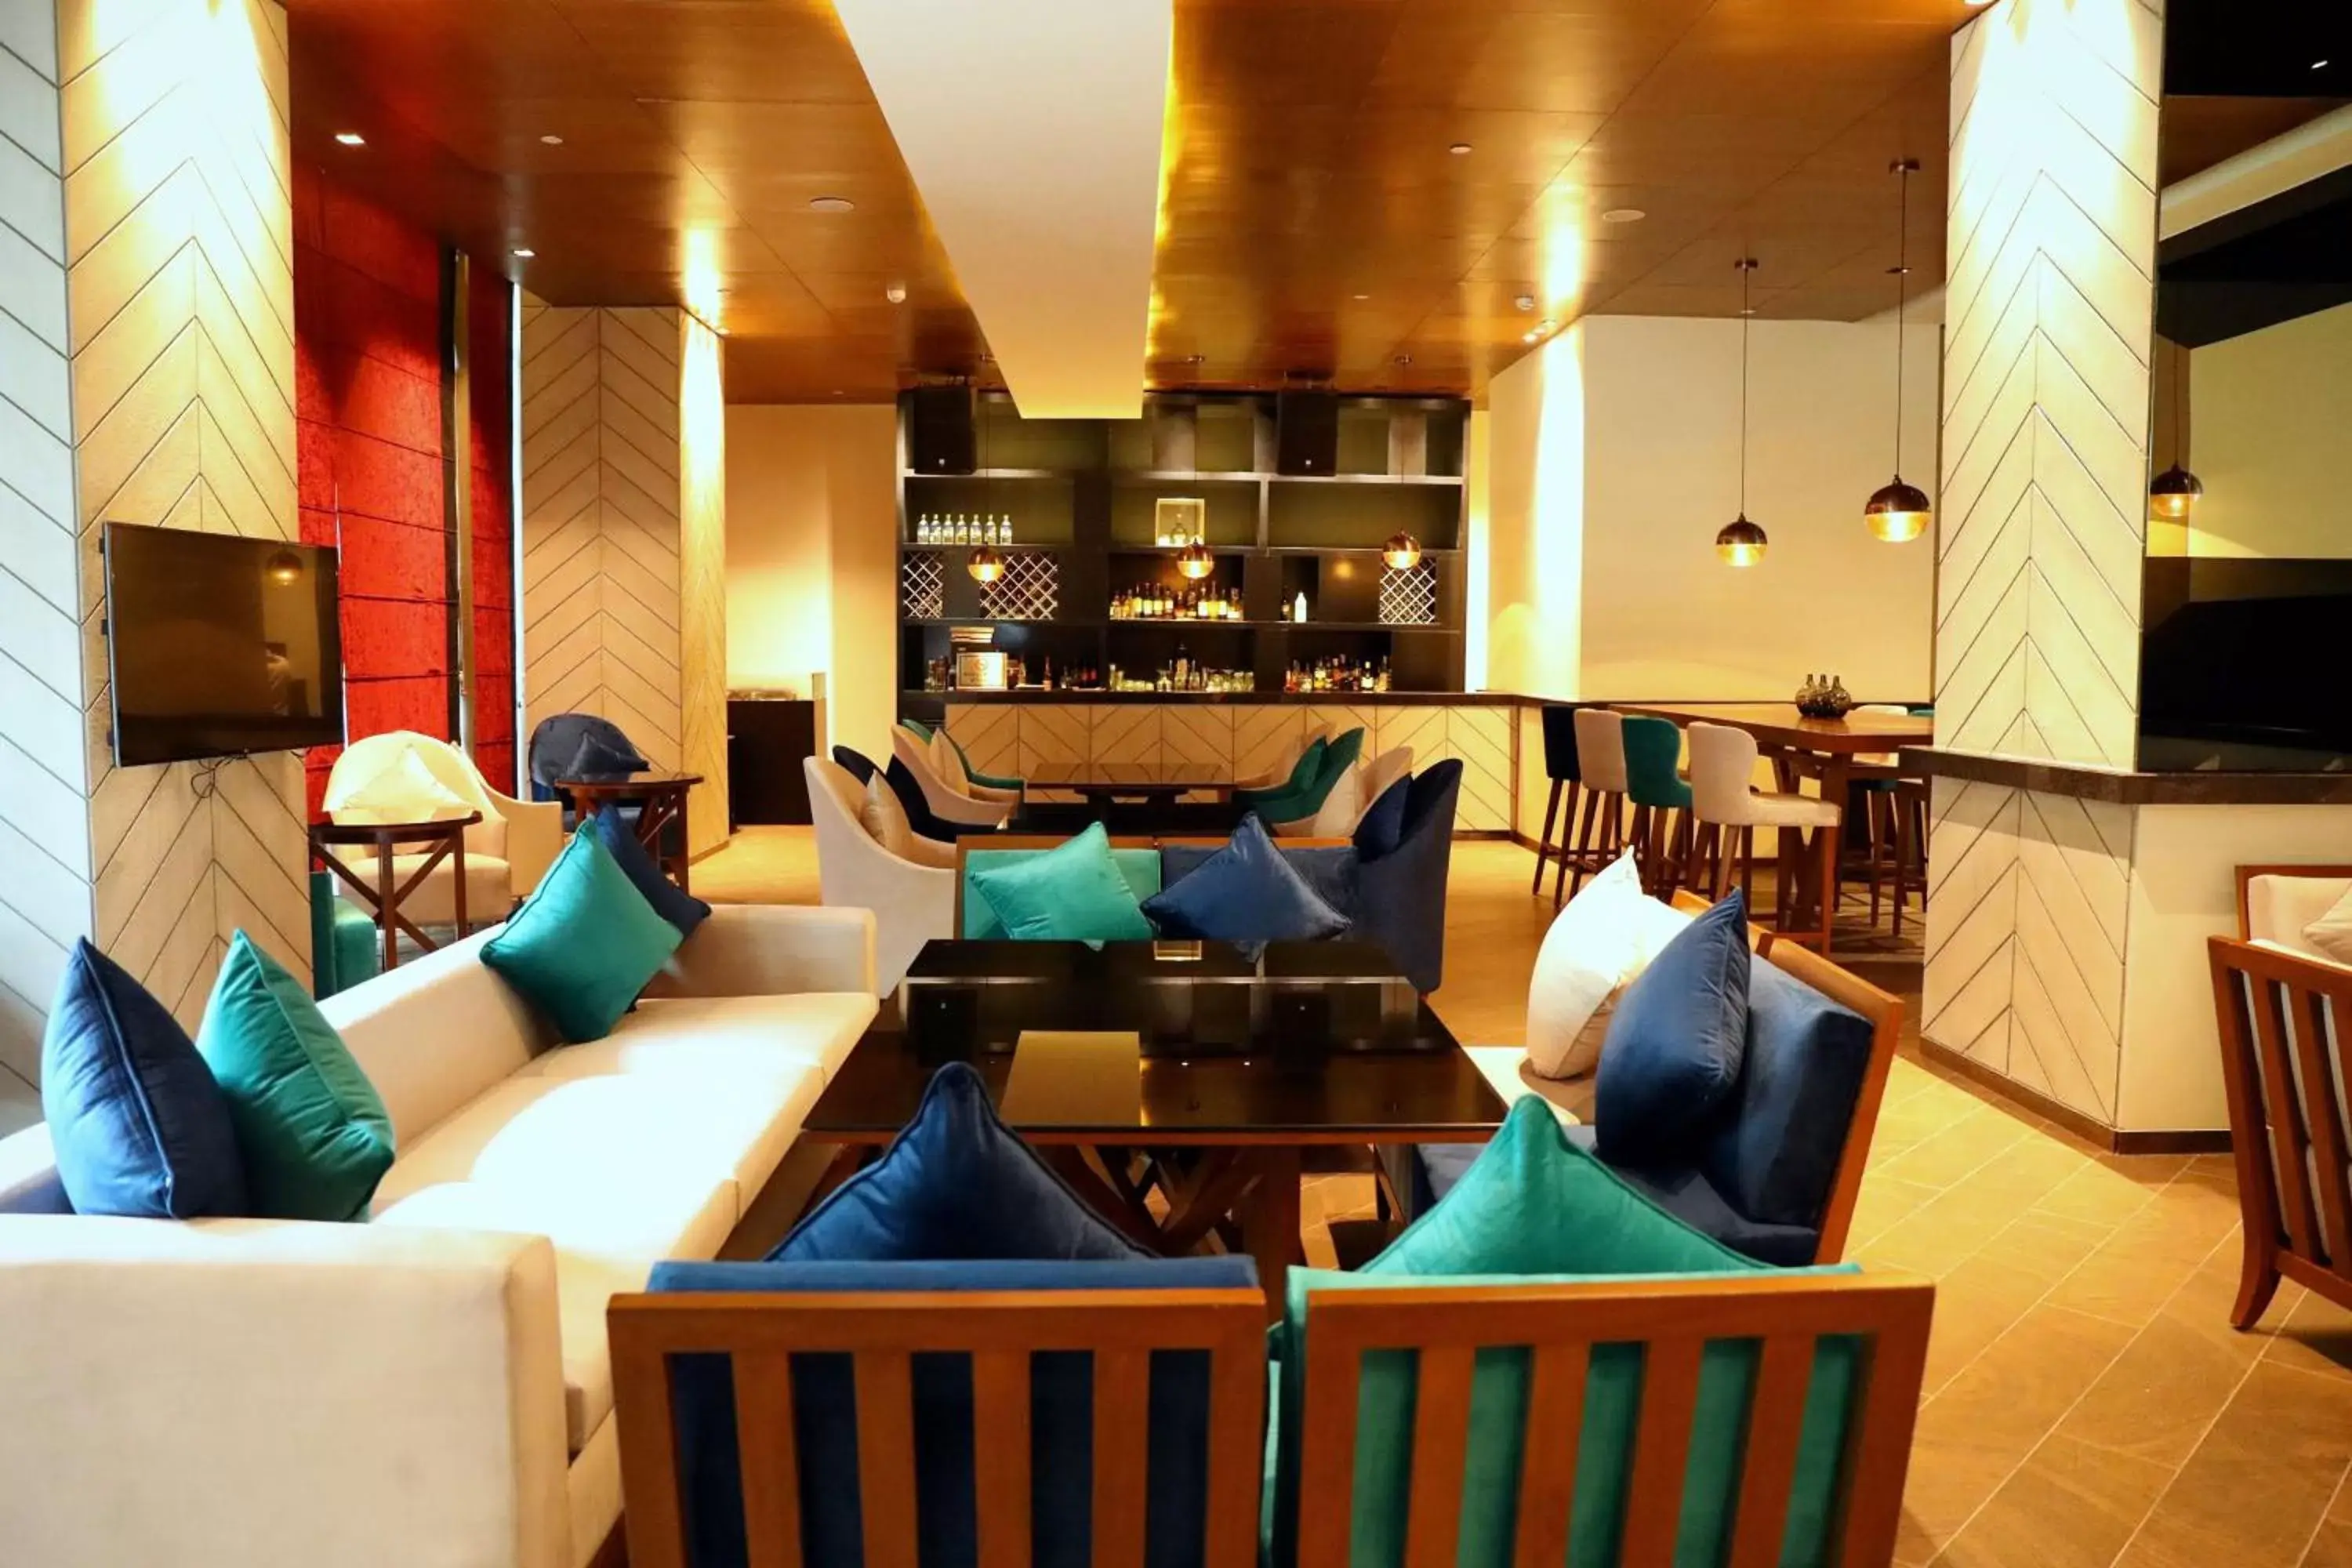 Restaurant/places to eat, Lounge/Bar in Hyatt Regency Amritsar